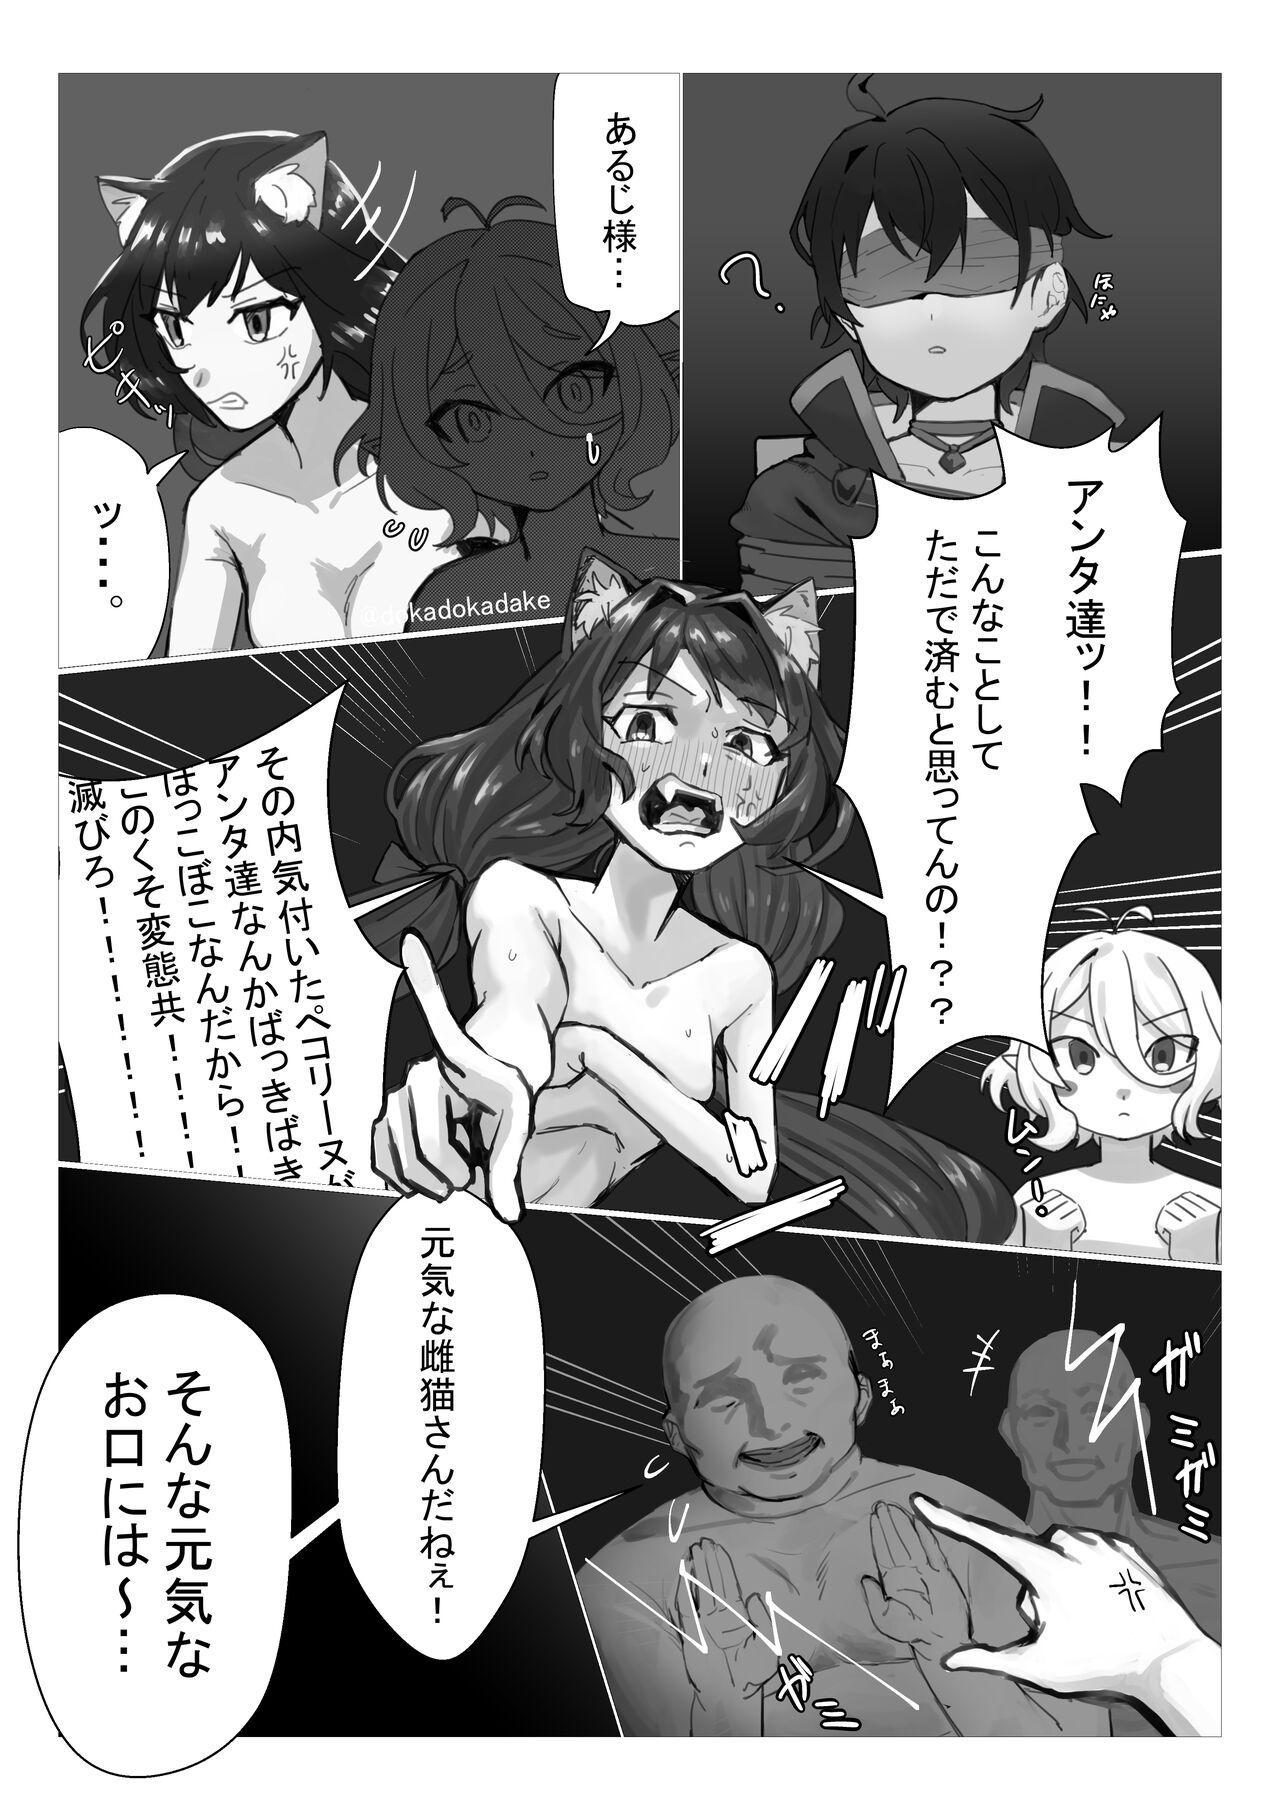 プリコネ輪姦NTR漫画 1